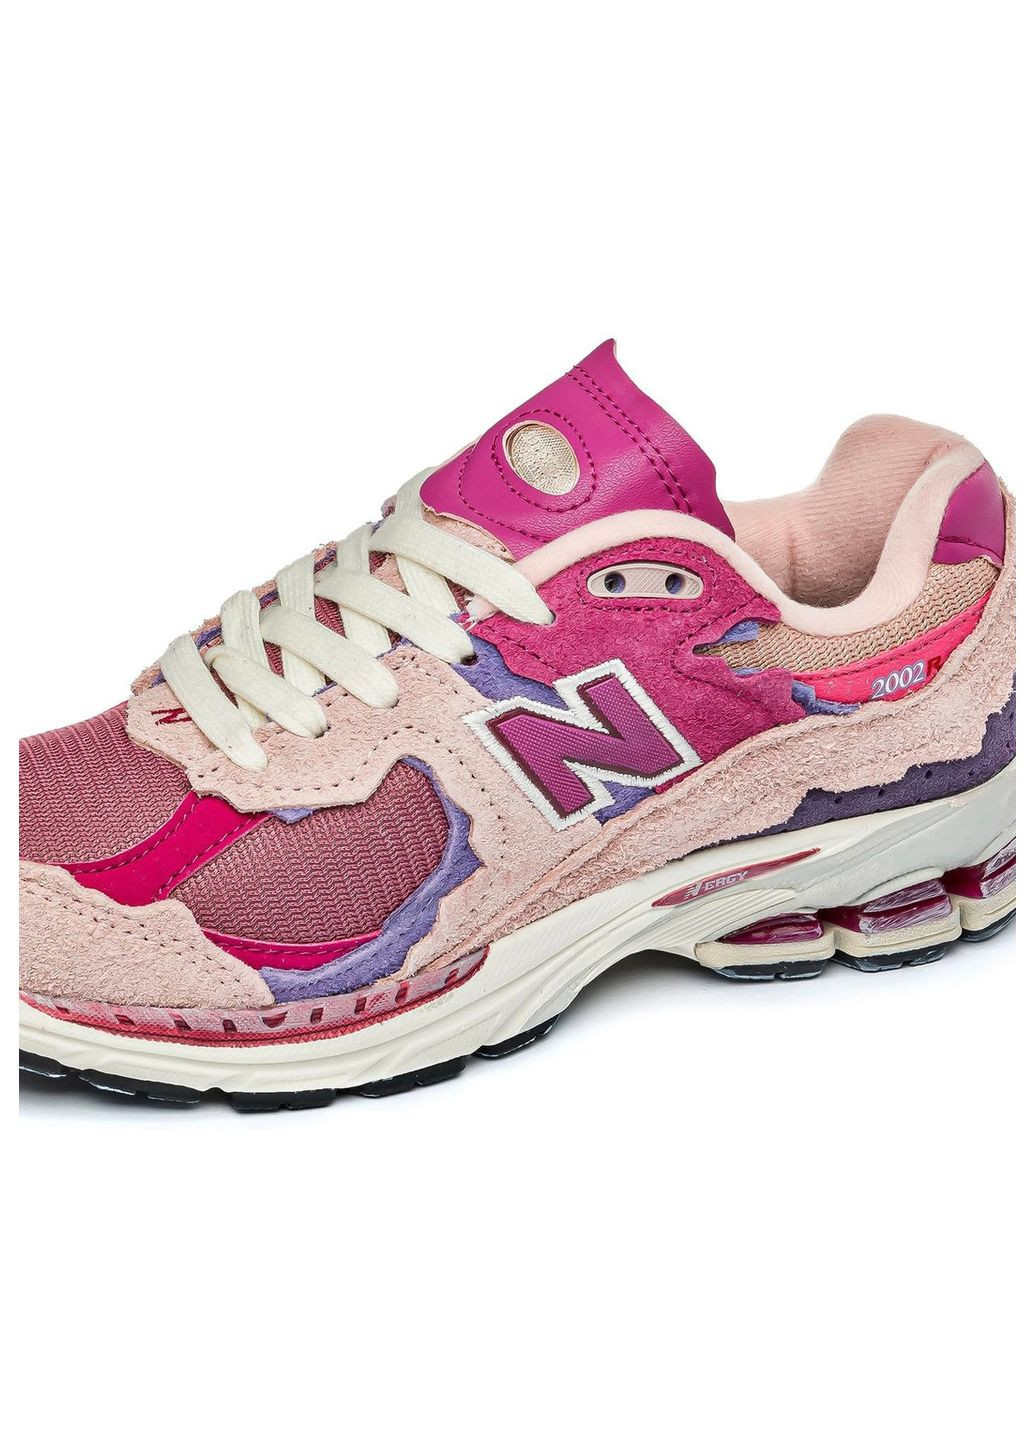 Розовые демисезонные кросовки женские pink, вьетнам New Balance 2002r